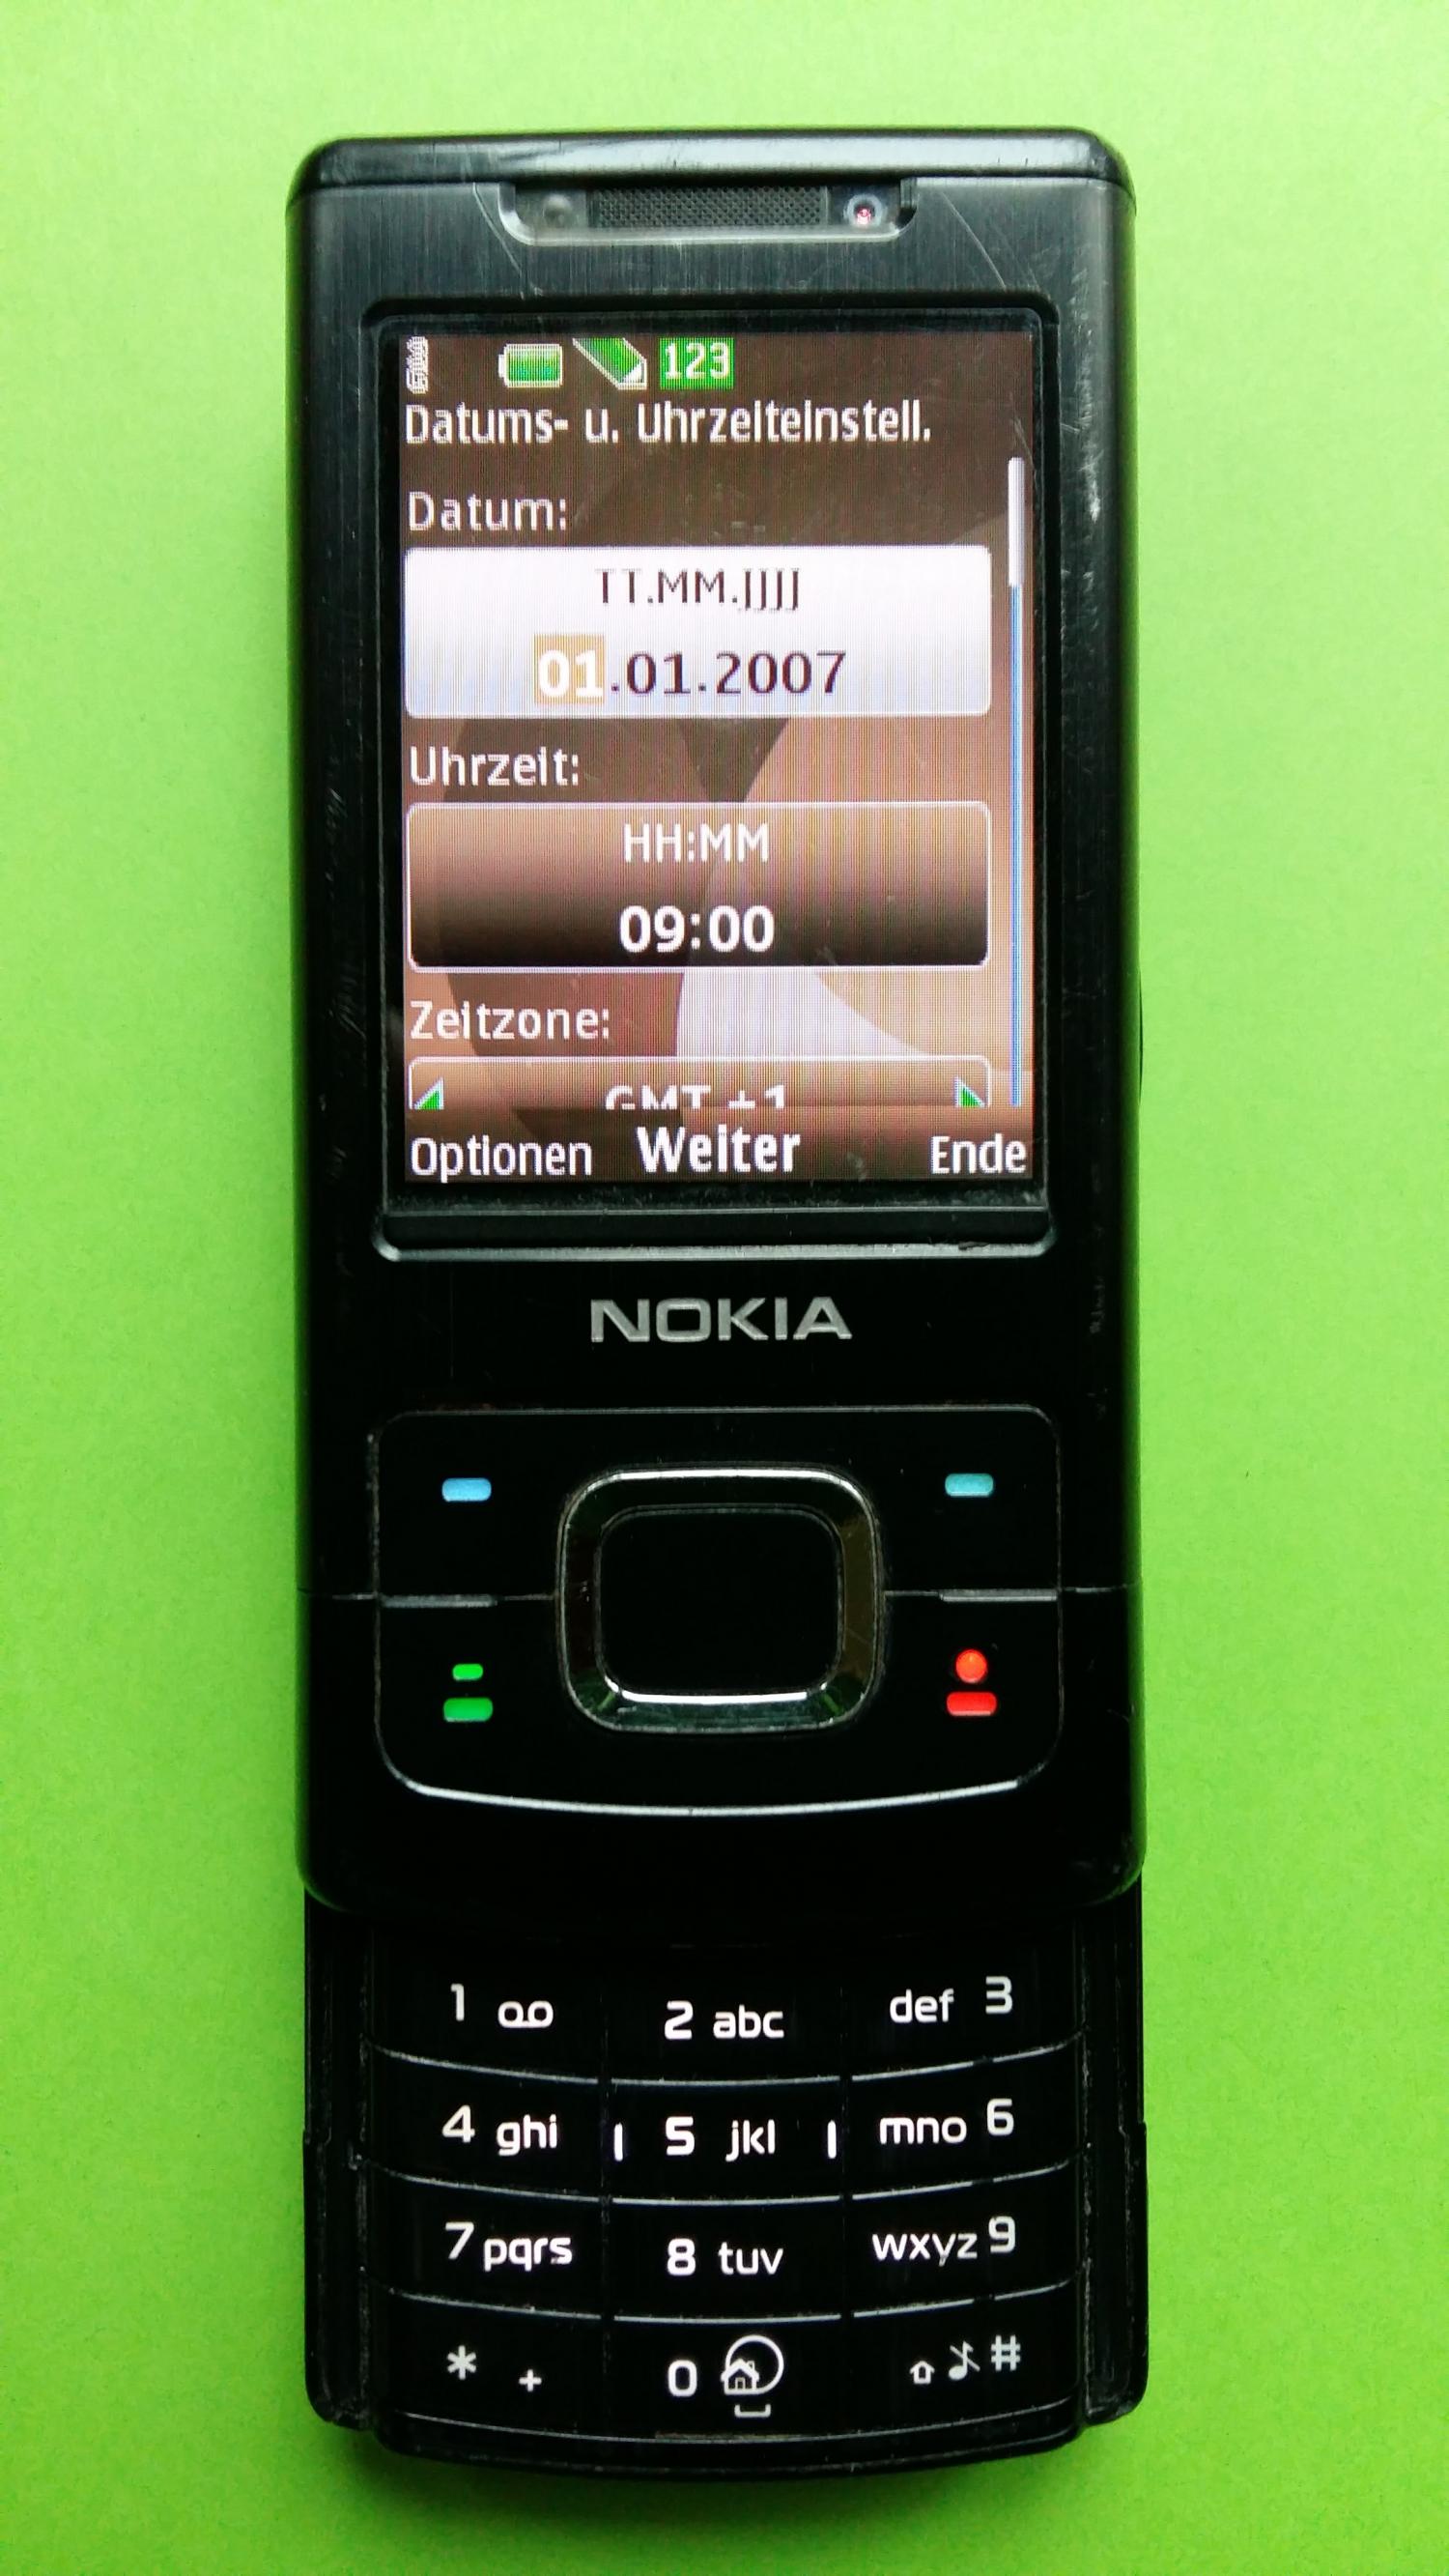 image-7325431-Nokia 6500S-1 (3)2.jpg